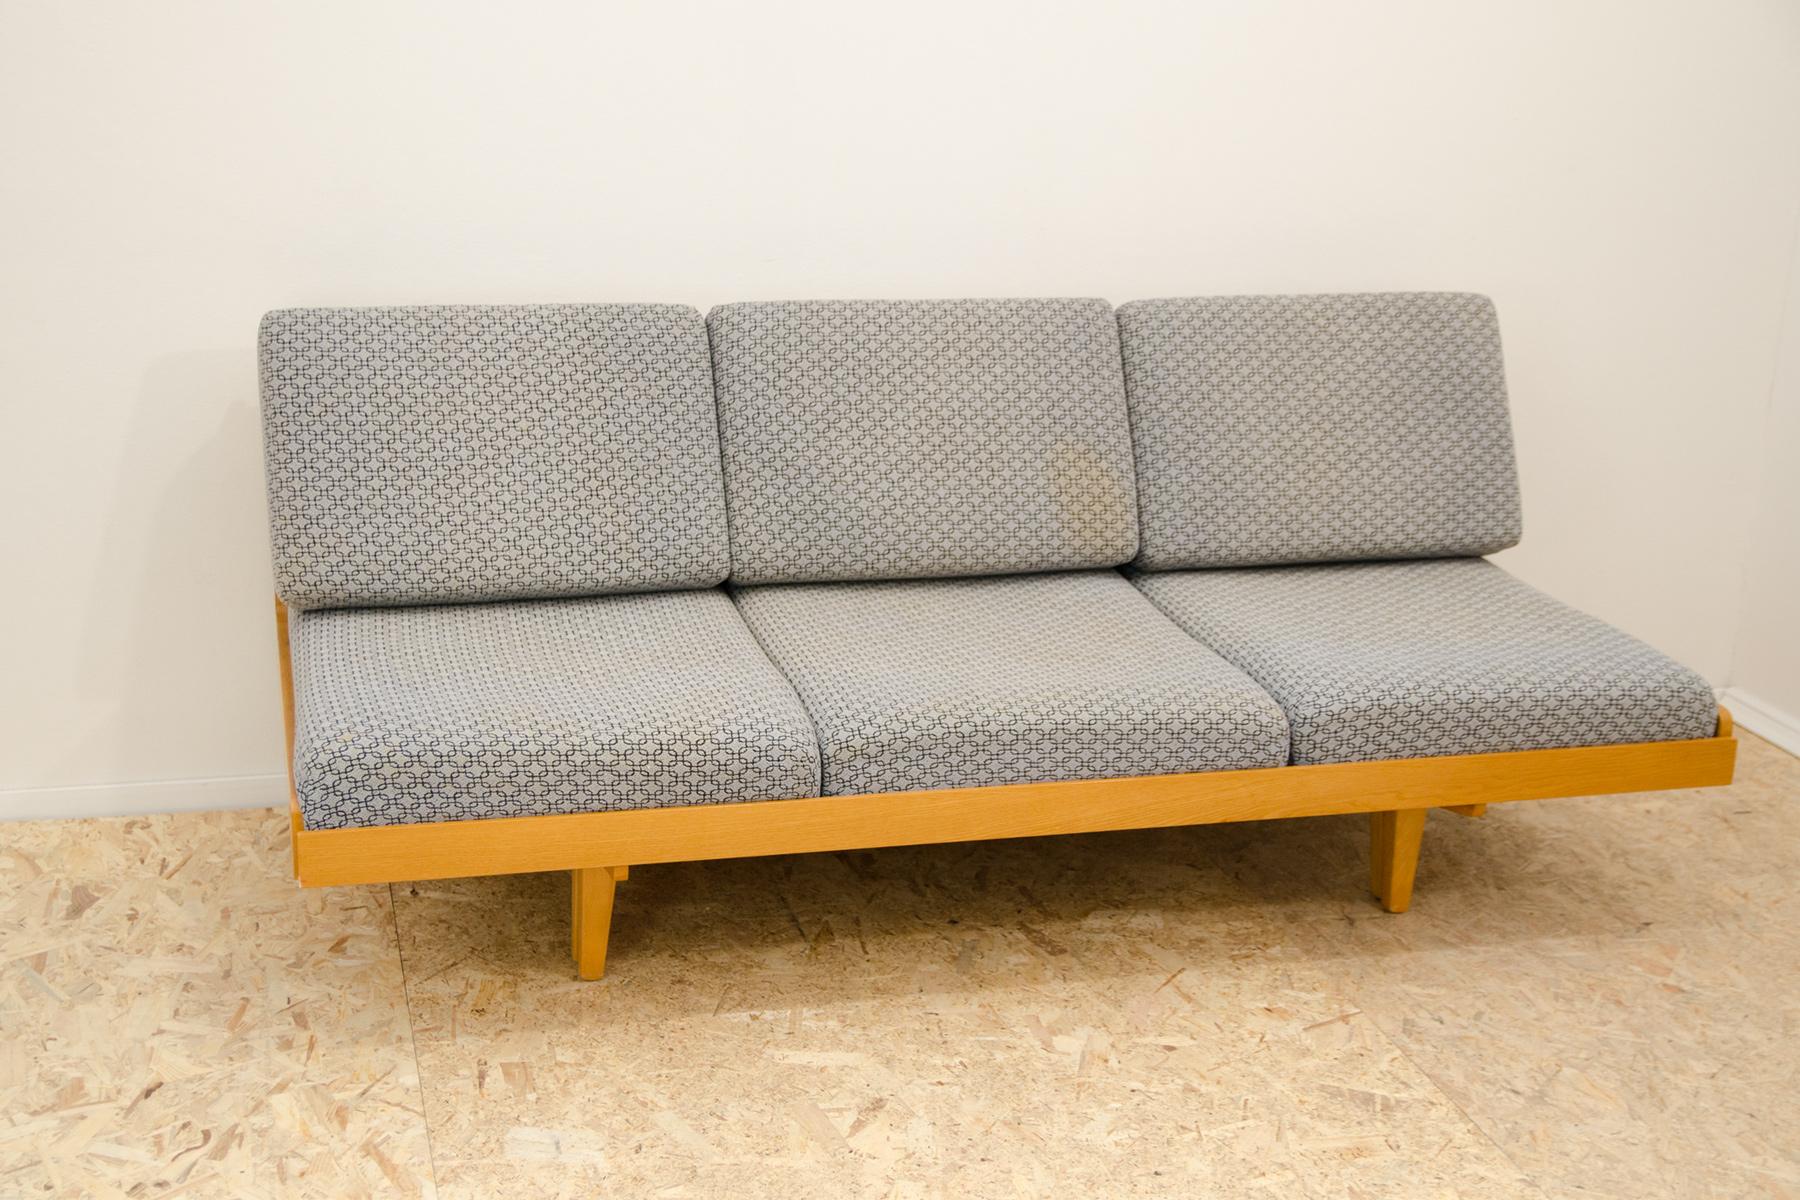 Schlafsofa aus der Mitte des Jahrhunderts, hergestellt in der ehemaligen Tschechoslowakei. Das Sofa ist in sehr gutem Zustand, der Stoff hat an einigen Stellen kleine Flecken, eine Neupolsterung, die wir anbieten können, wäre geeignet. MATERIAL: